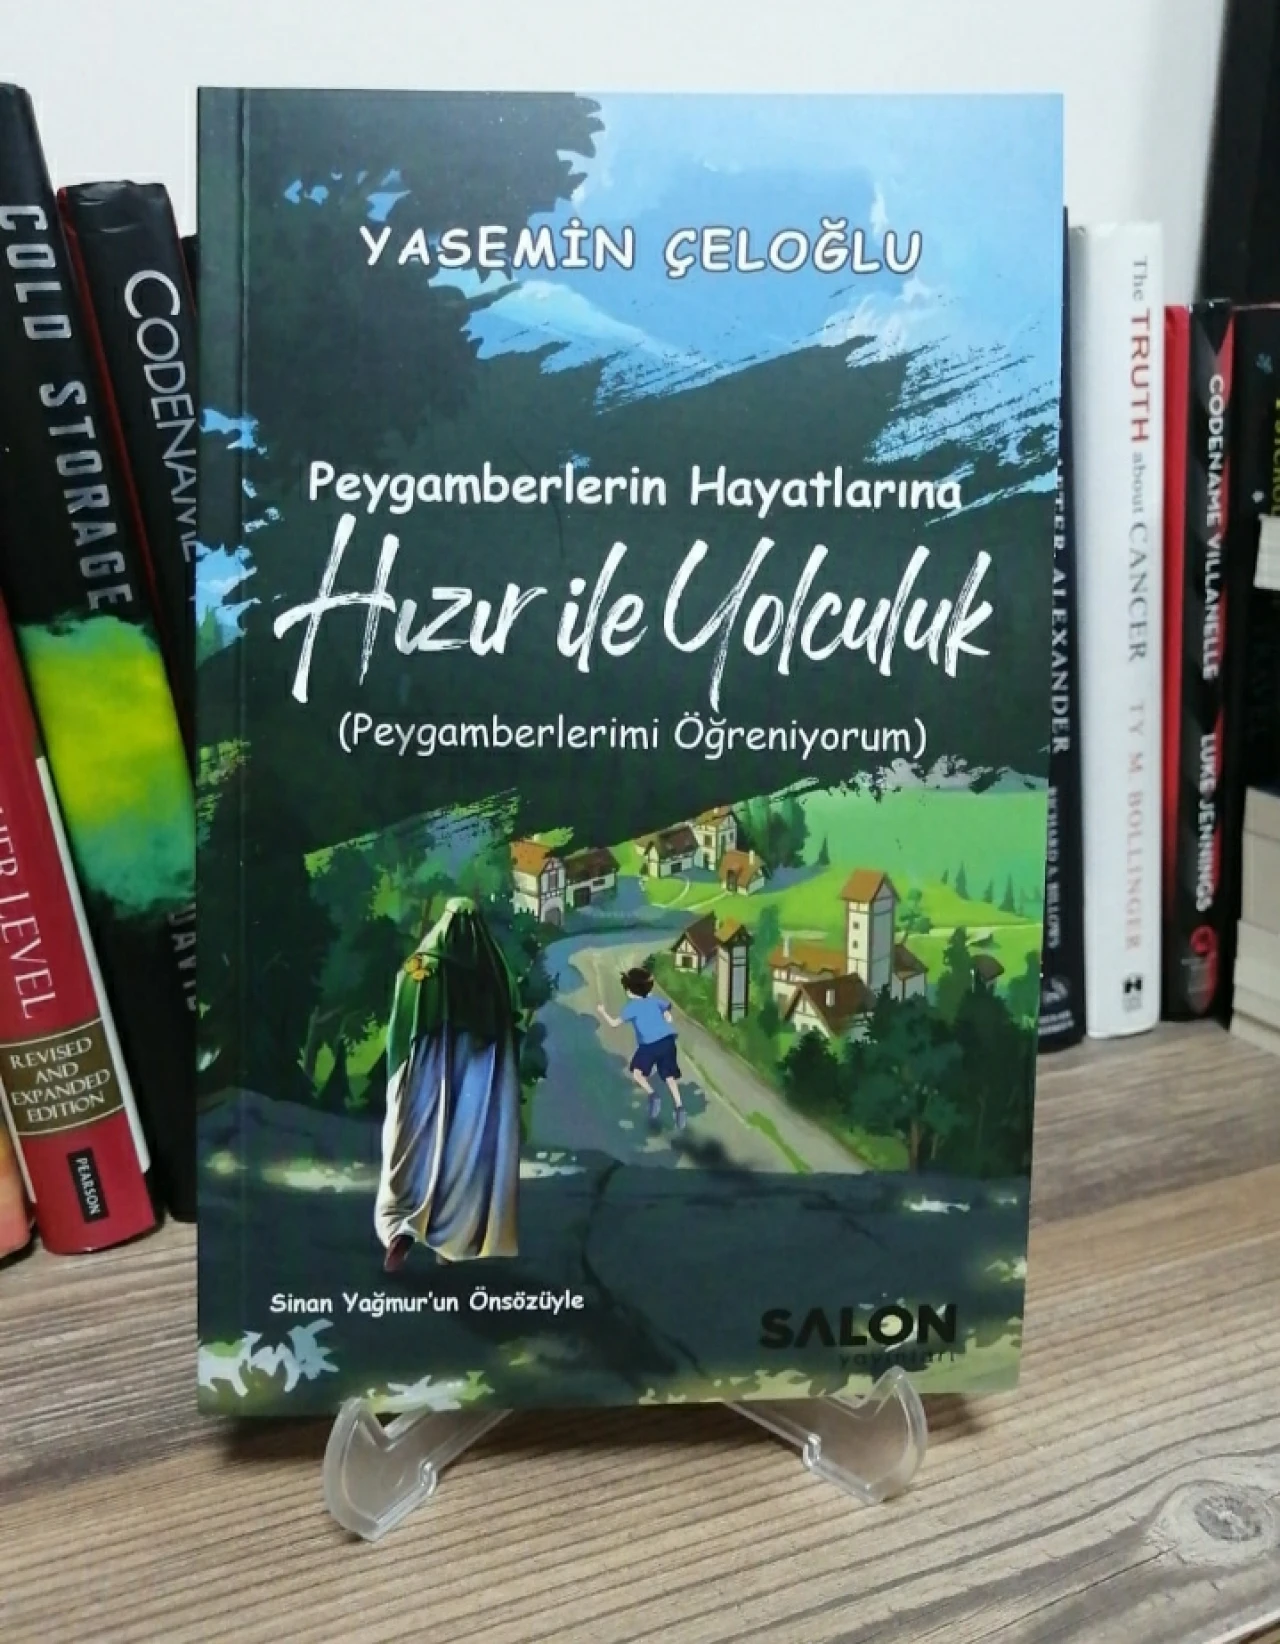 Yasemin Çeloğlu'nun yeni kitabı 'Peygamberlerin Hayatına Hızır ile Yolculuk' yayımlandı